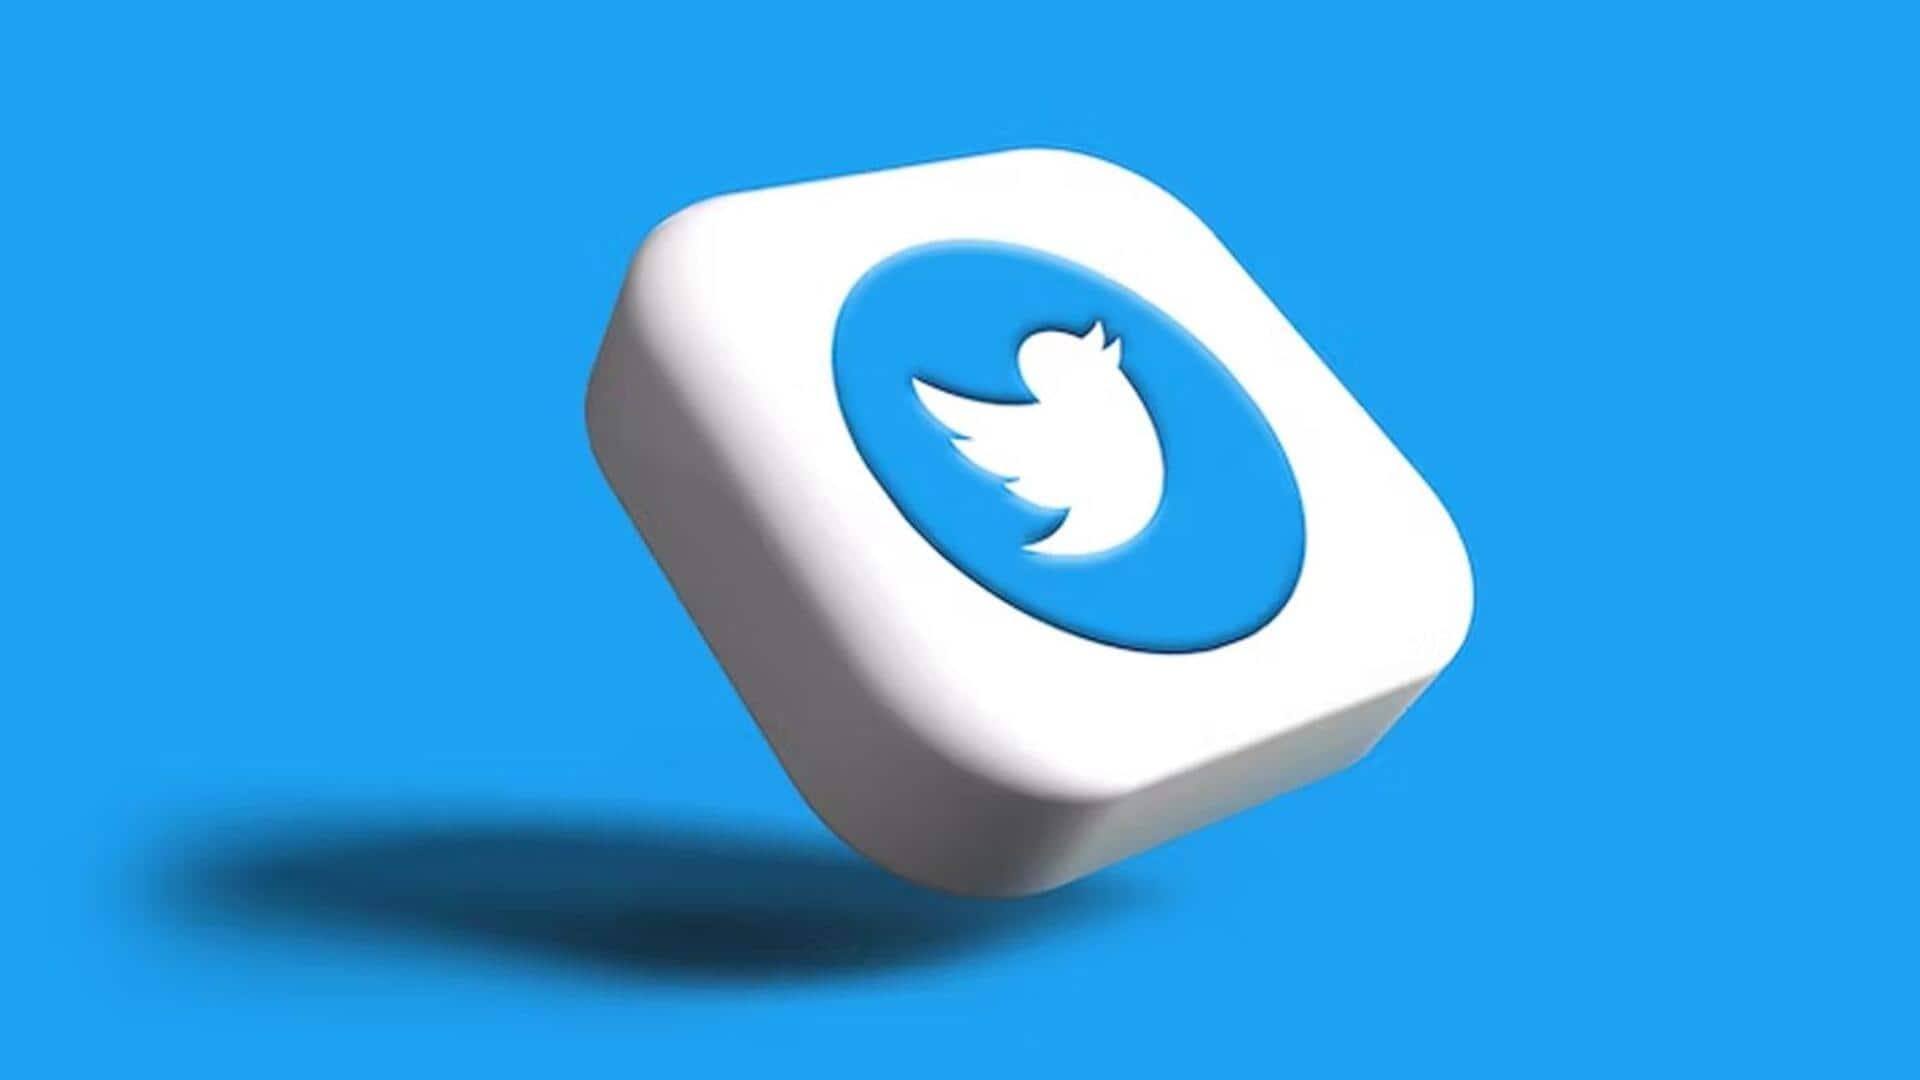 ट्विटर ने ट्वीट एडिट करने की बढ़ाई समय सीमा, अब 1 घंटे तक कर सकेंगे एडिट